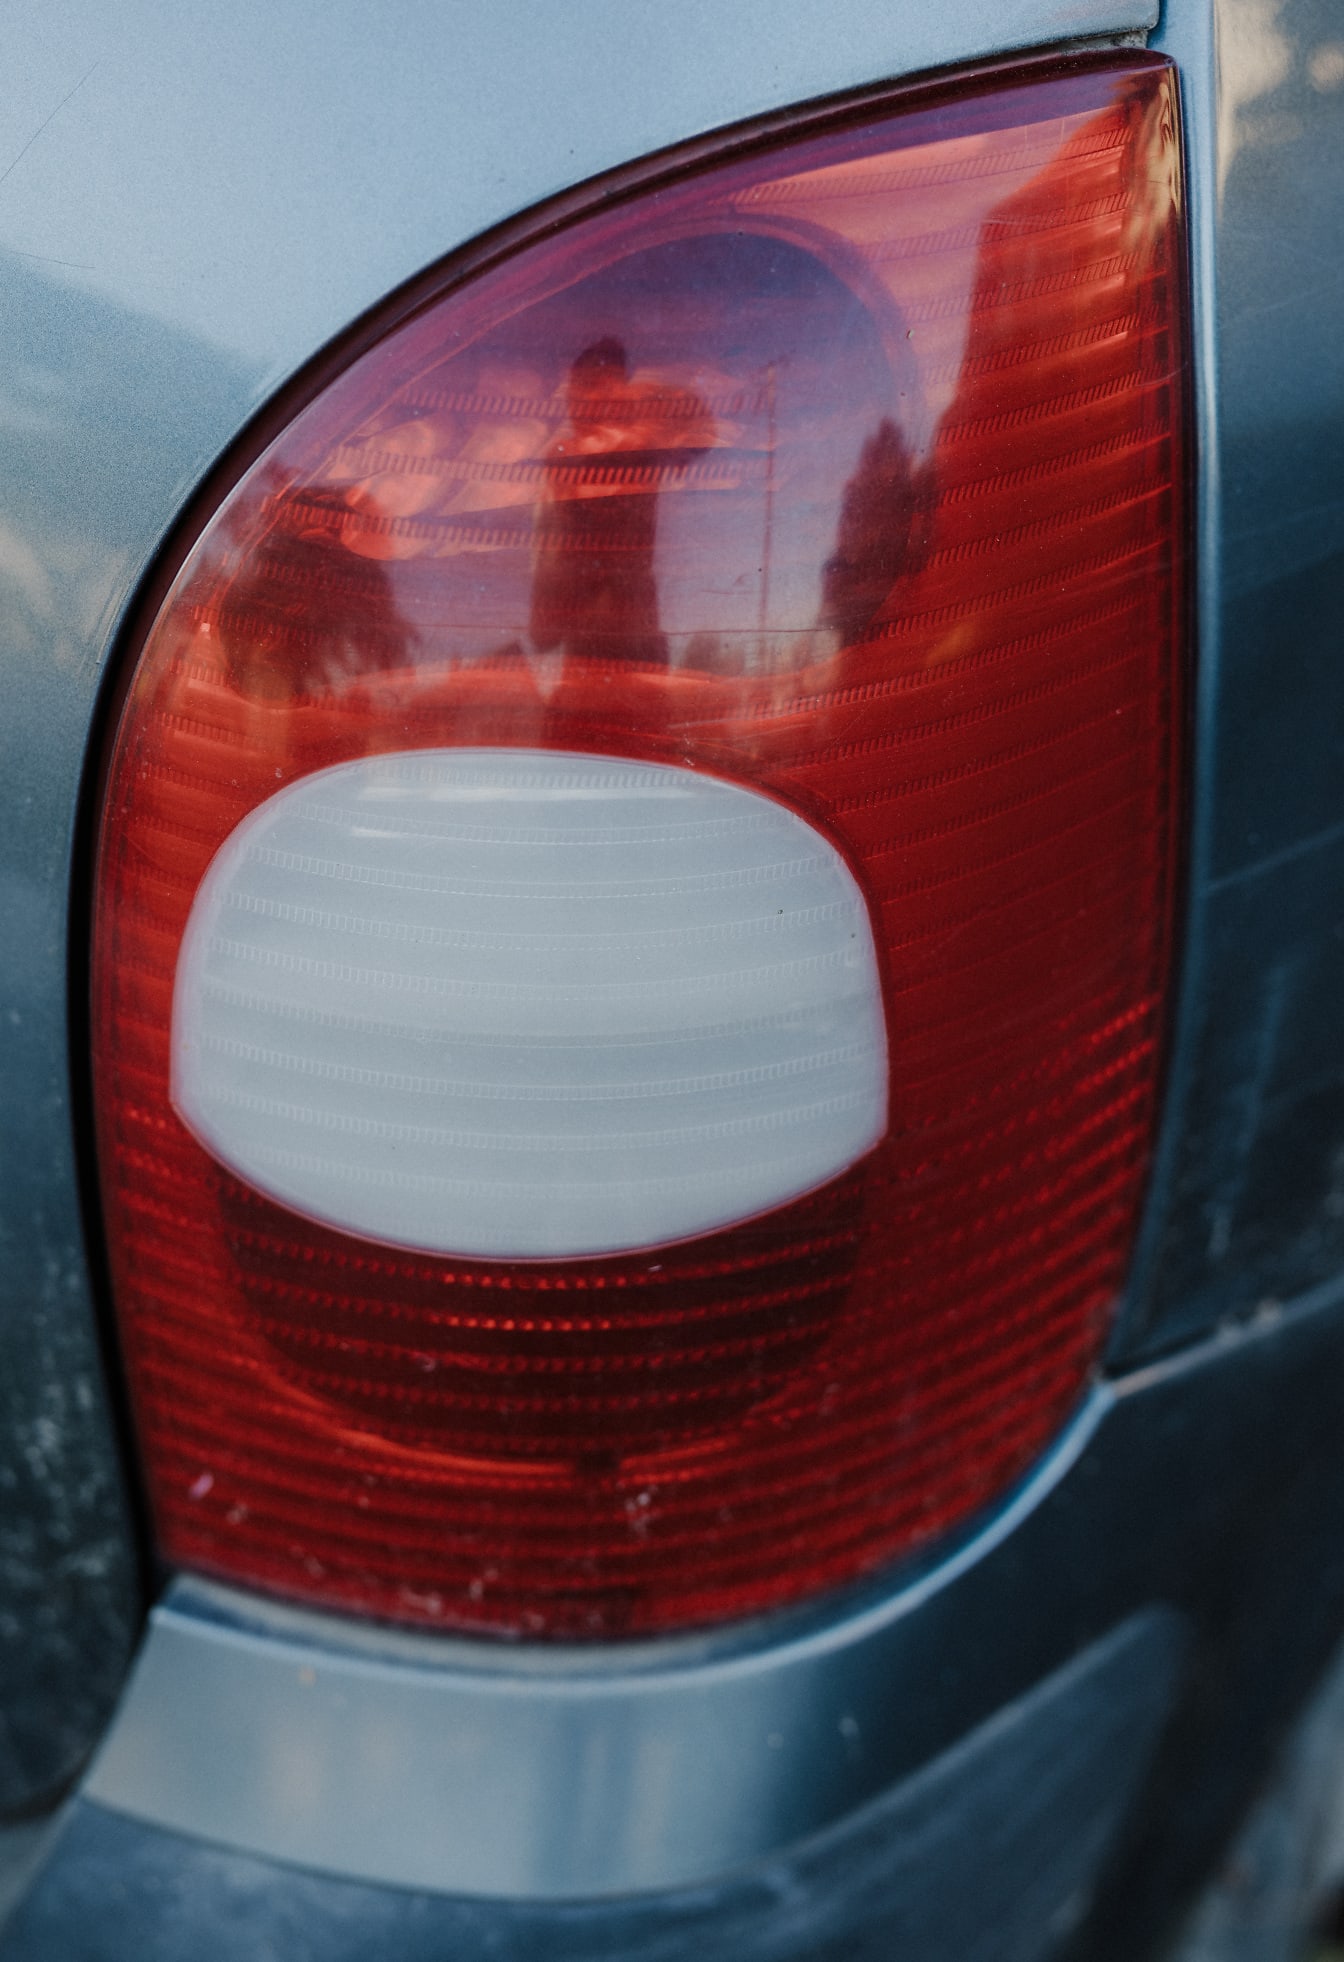 Chi tiết đèn hậu trên xe bằng nhựa trắng và đỏ sẫm